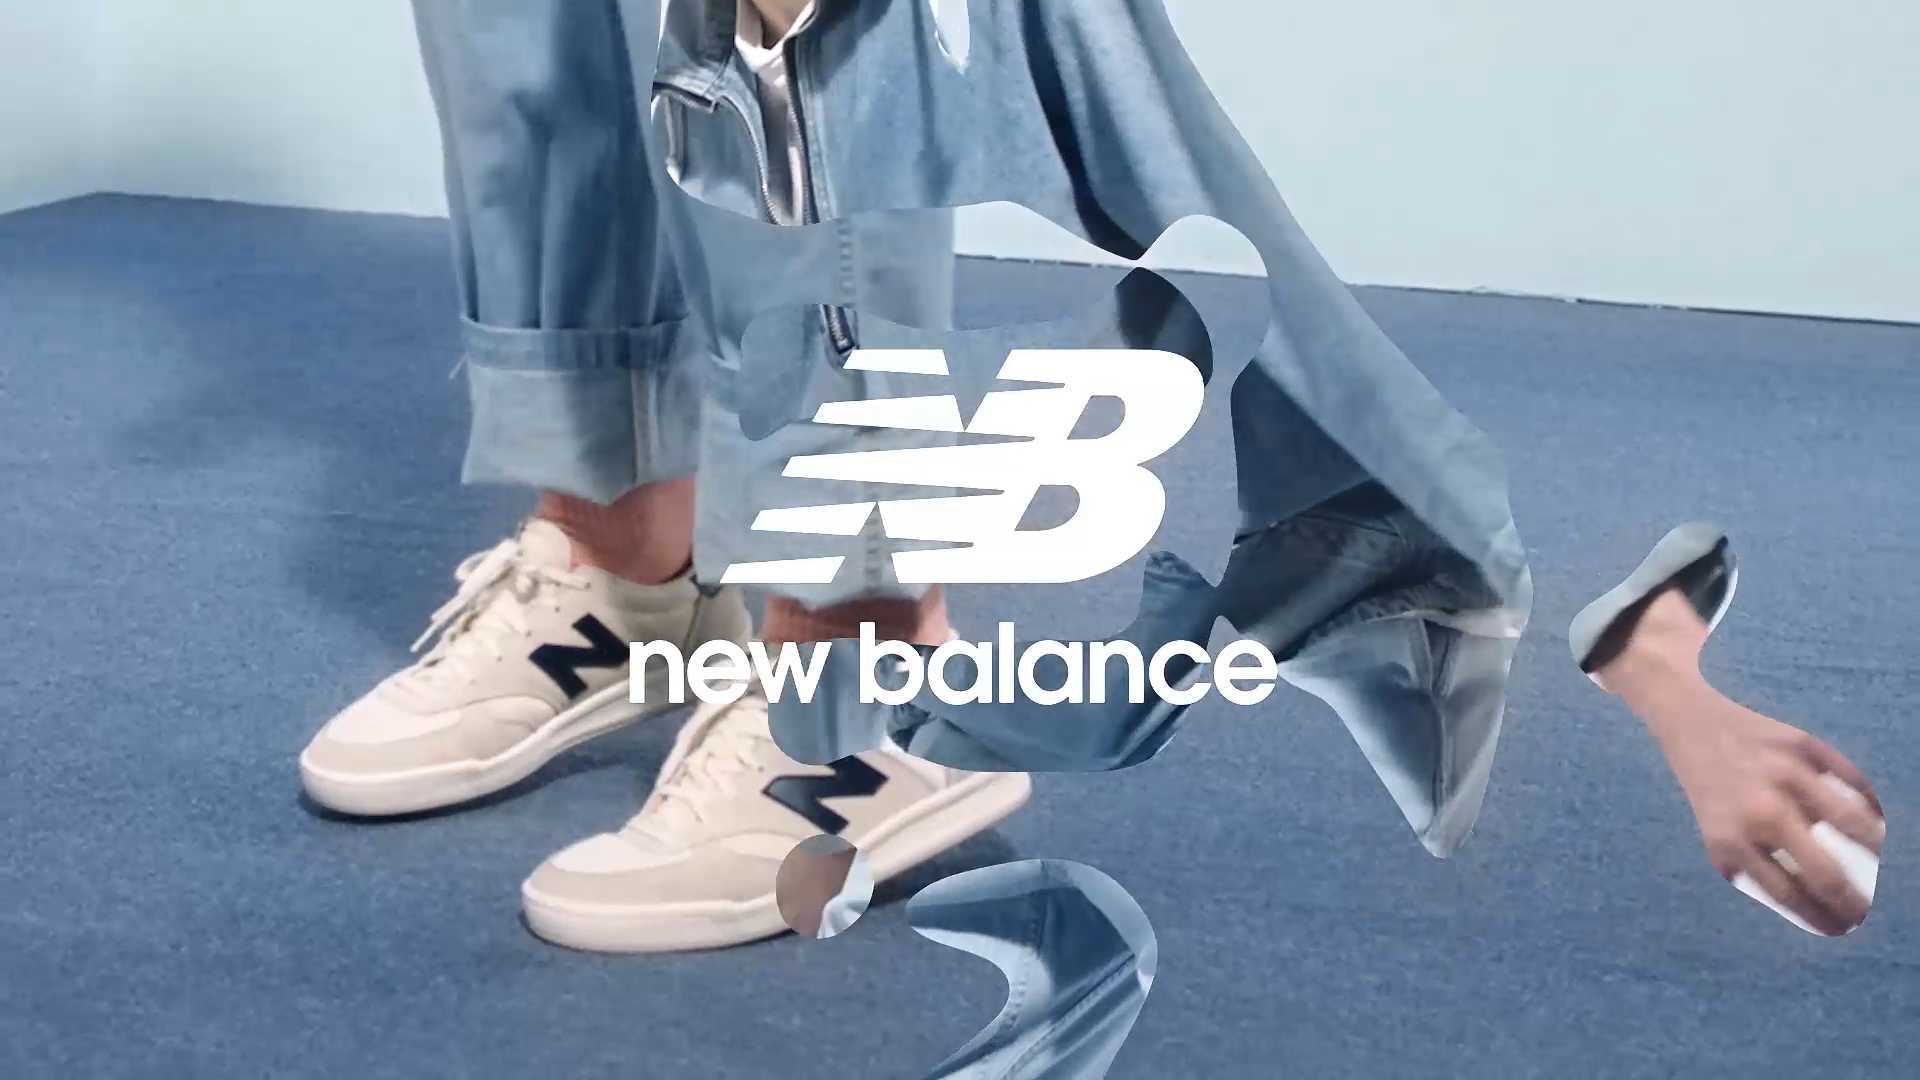 【时尚快节奏创意短片】300 | new balance